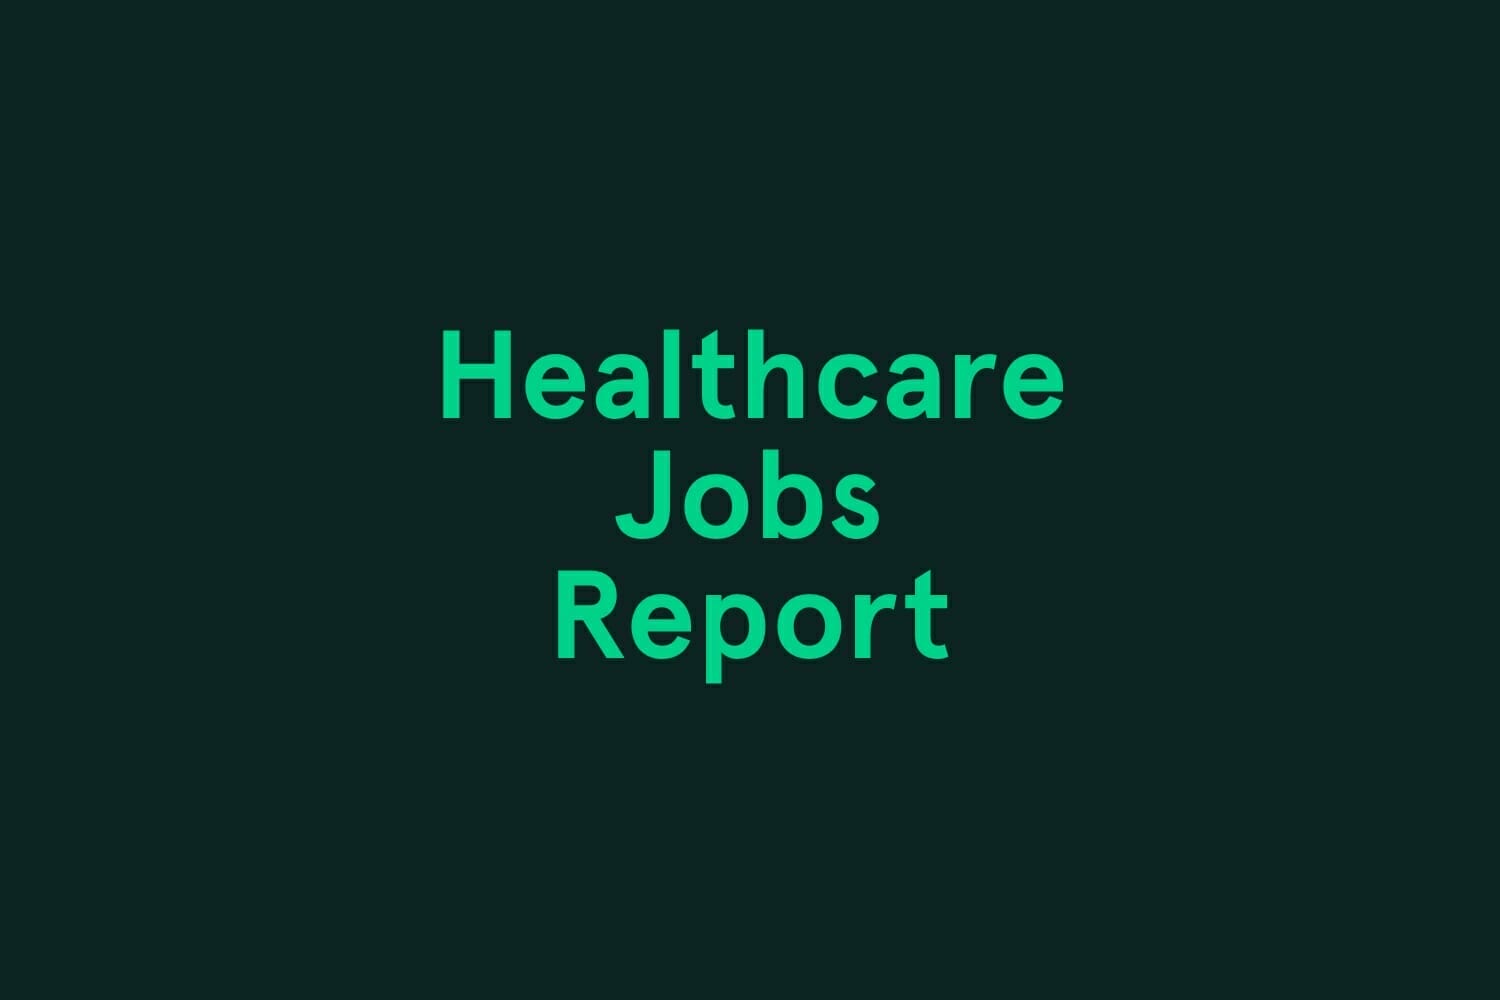 June Healthcare Jobs Report Infographic